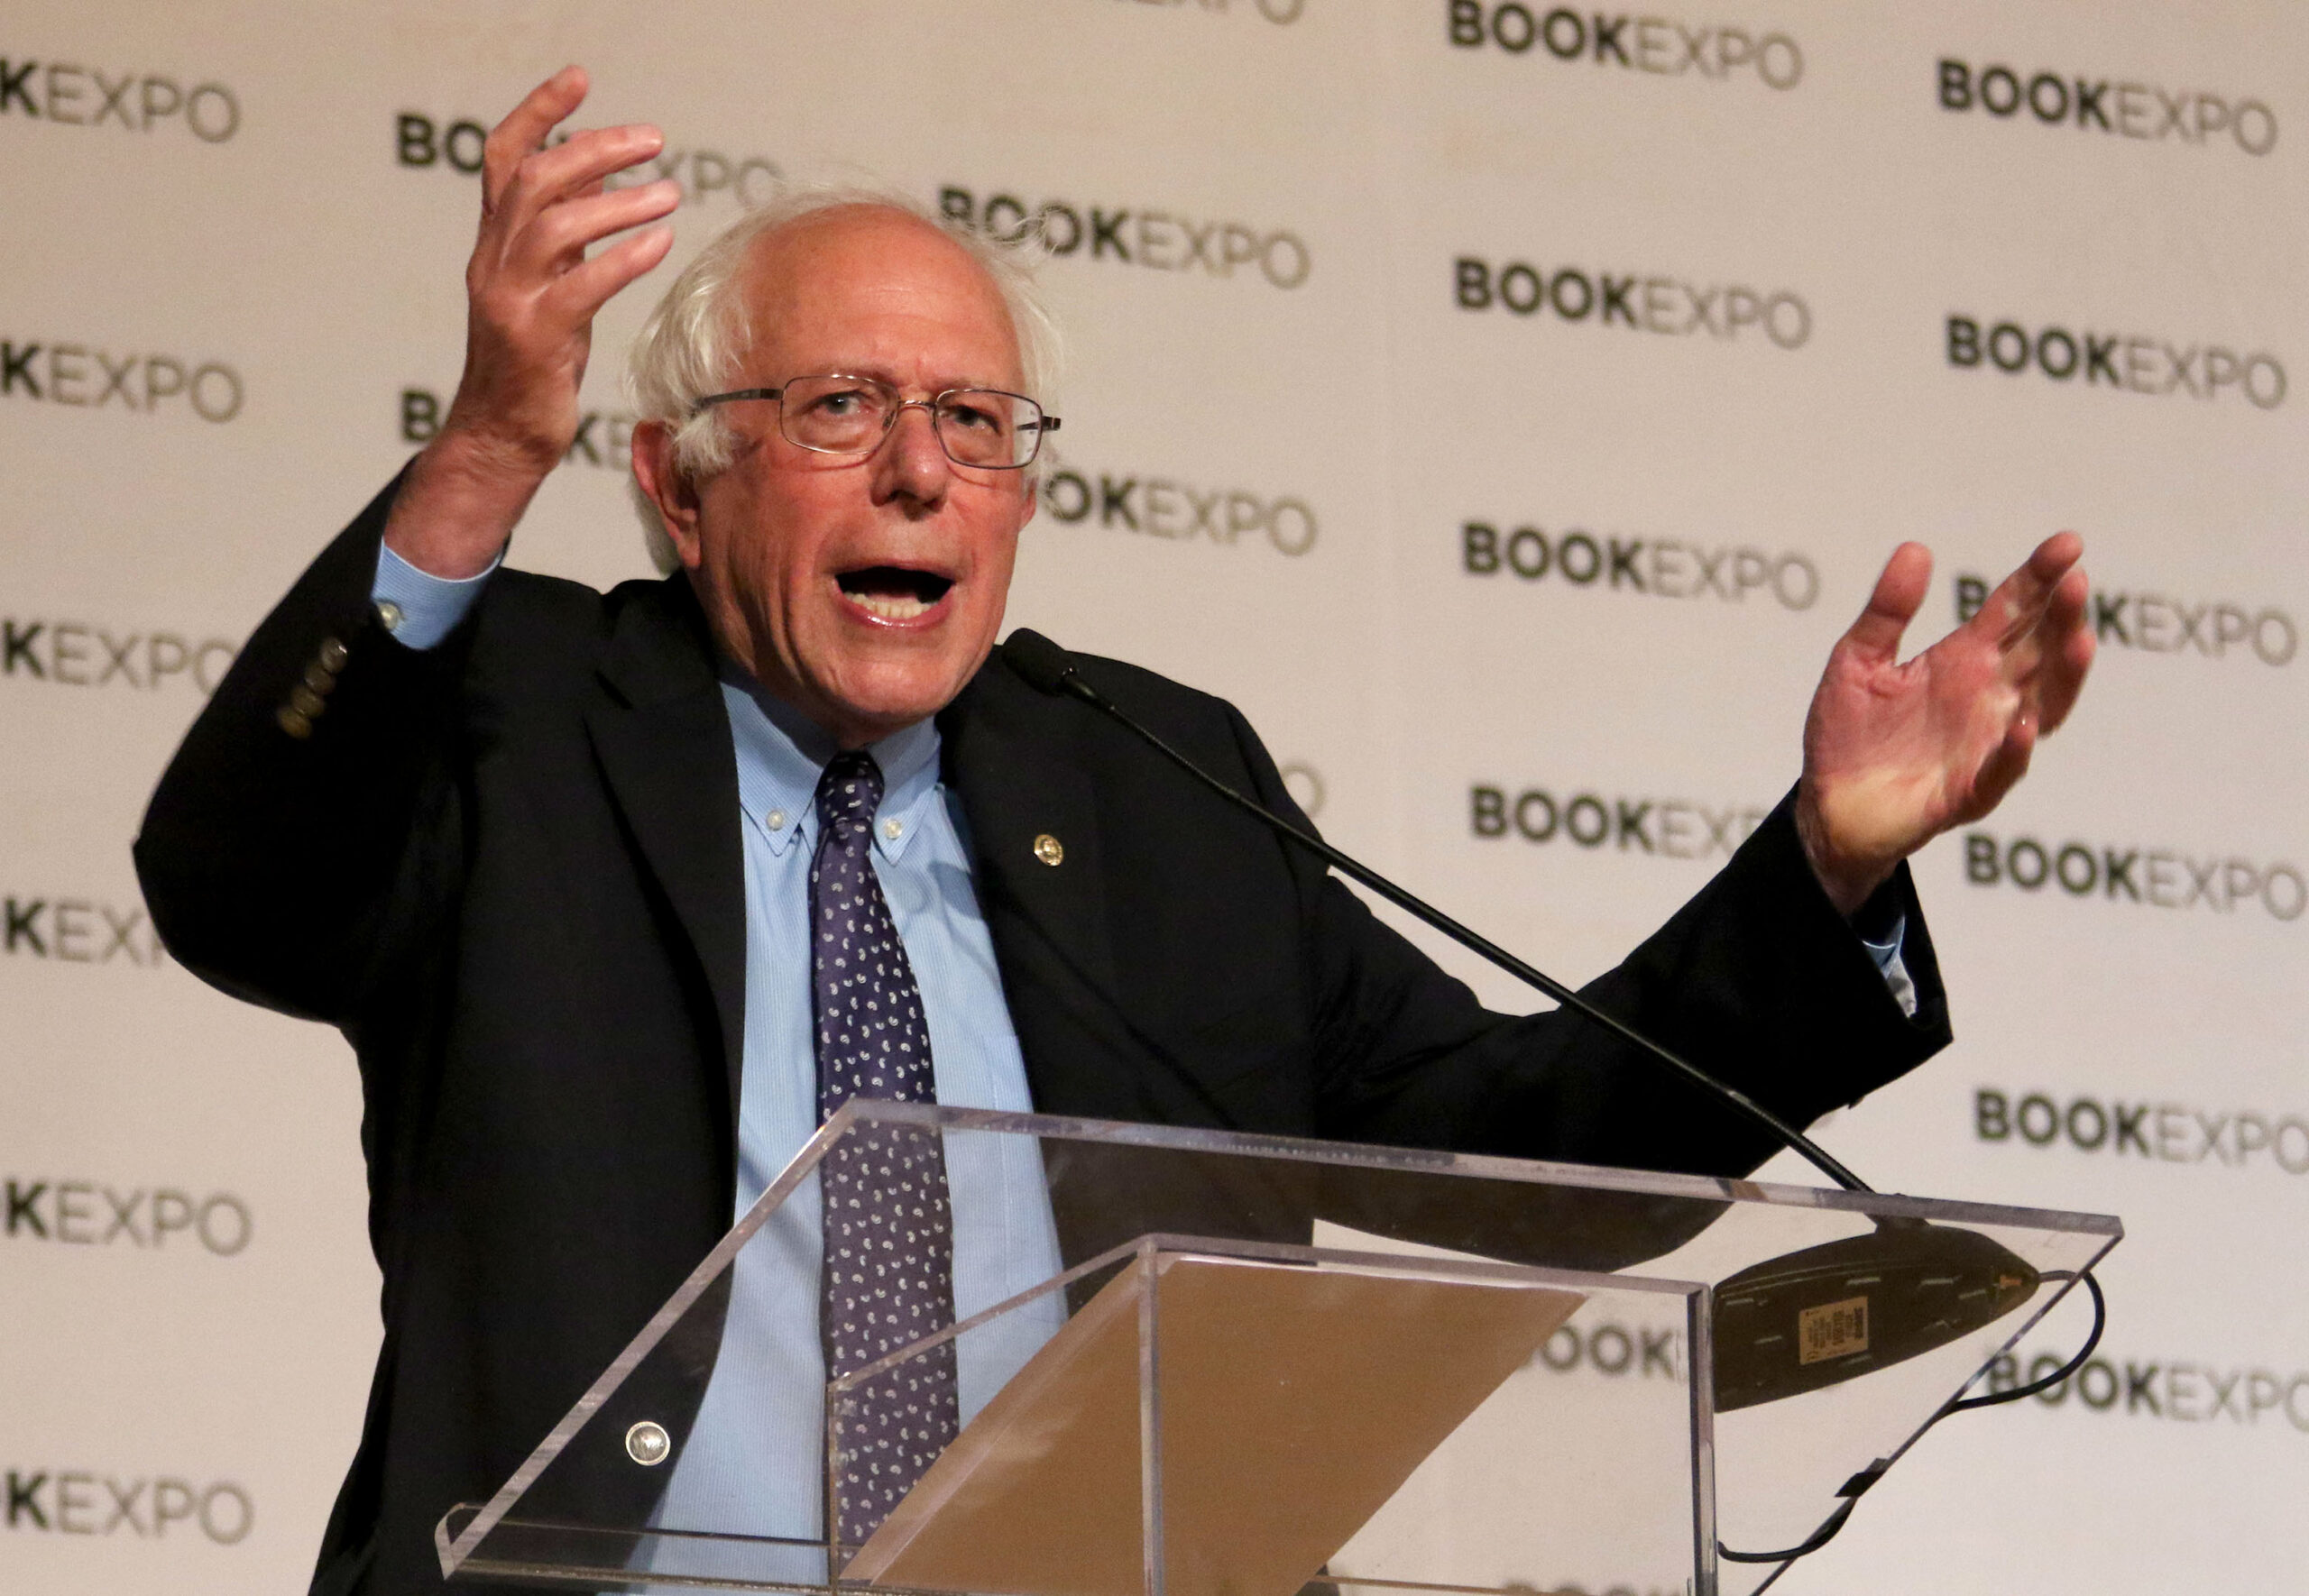 Bernie Sanders speaks with his hands raised by a lectern.